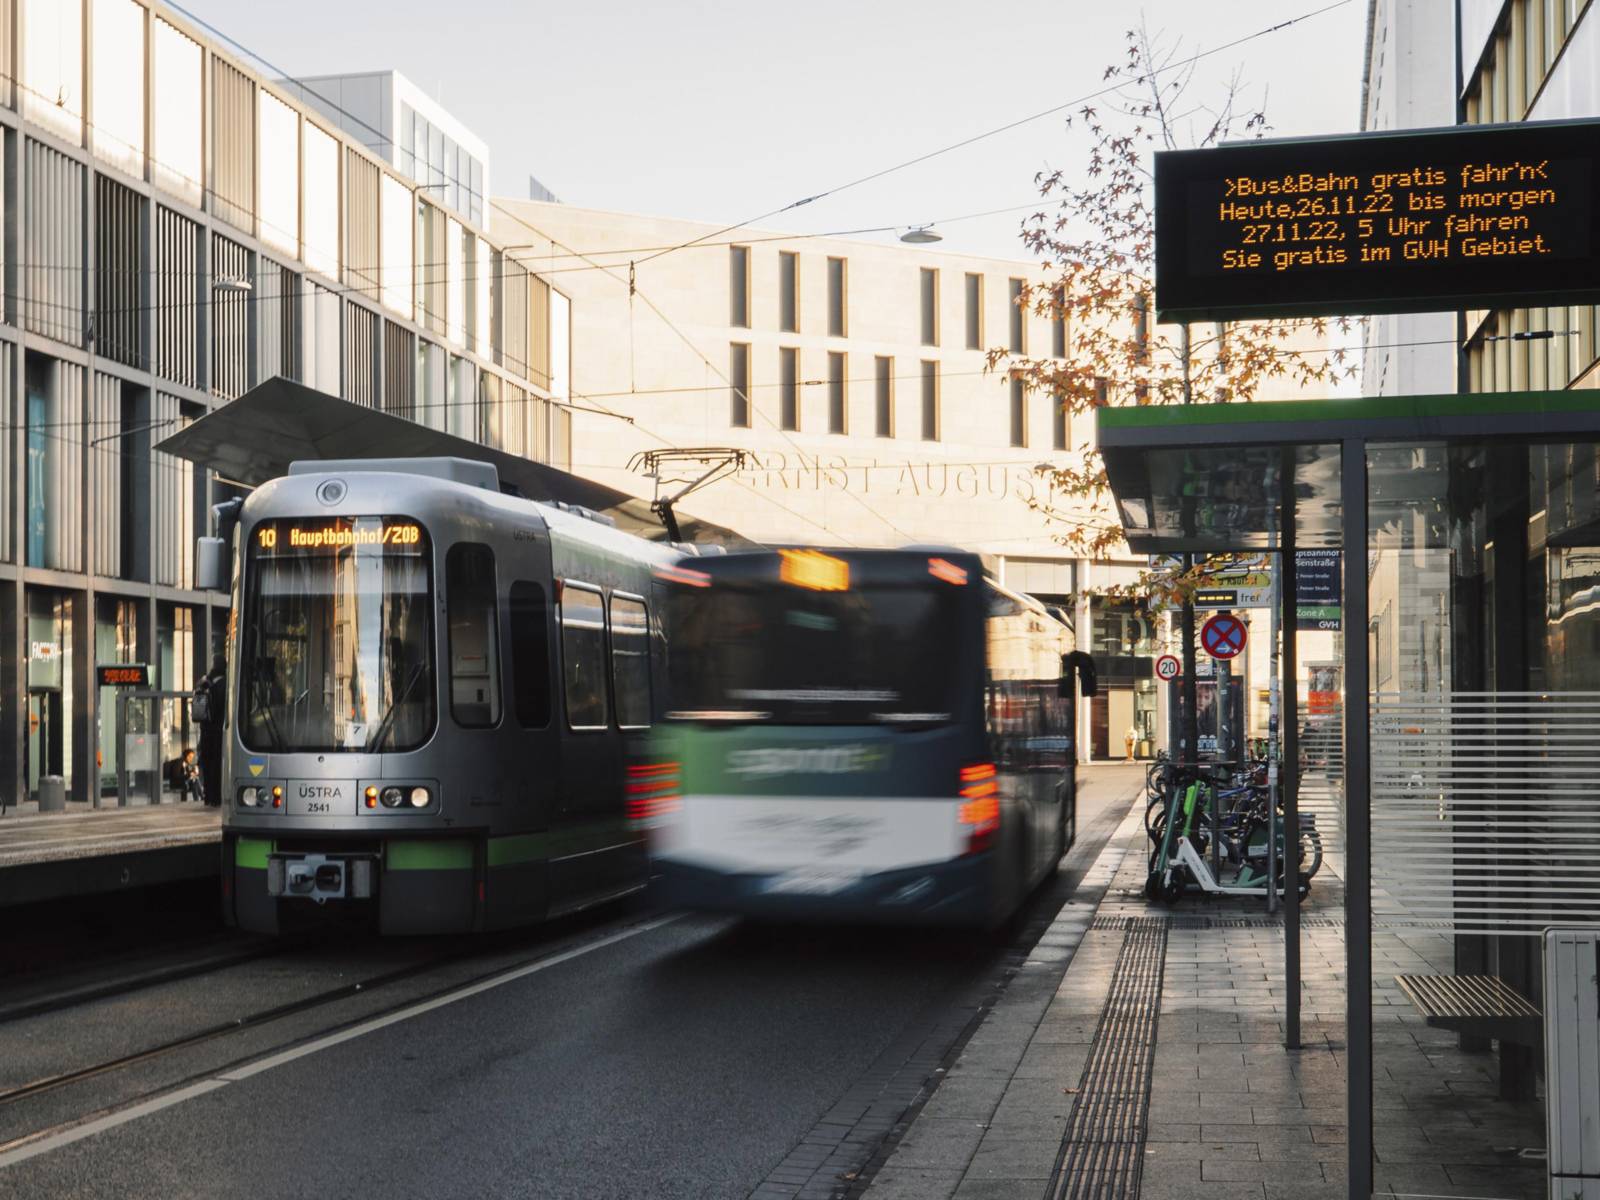 Bus und Bahn als Symbolbild für den Gratis-Fahr'n-Tag 2022